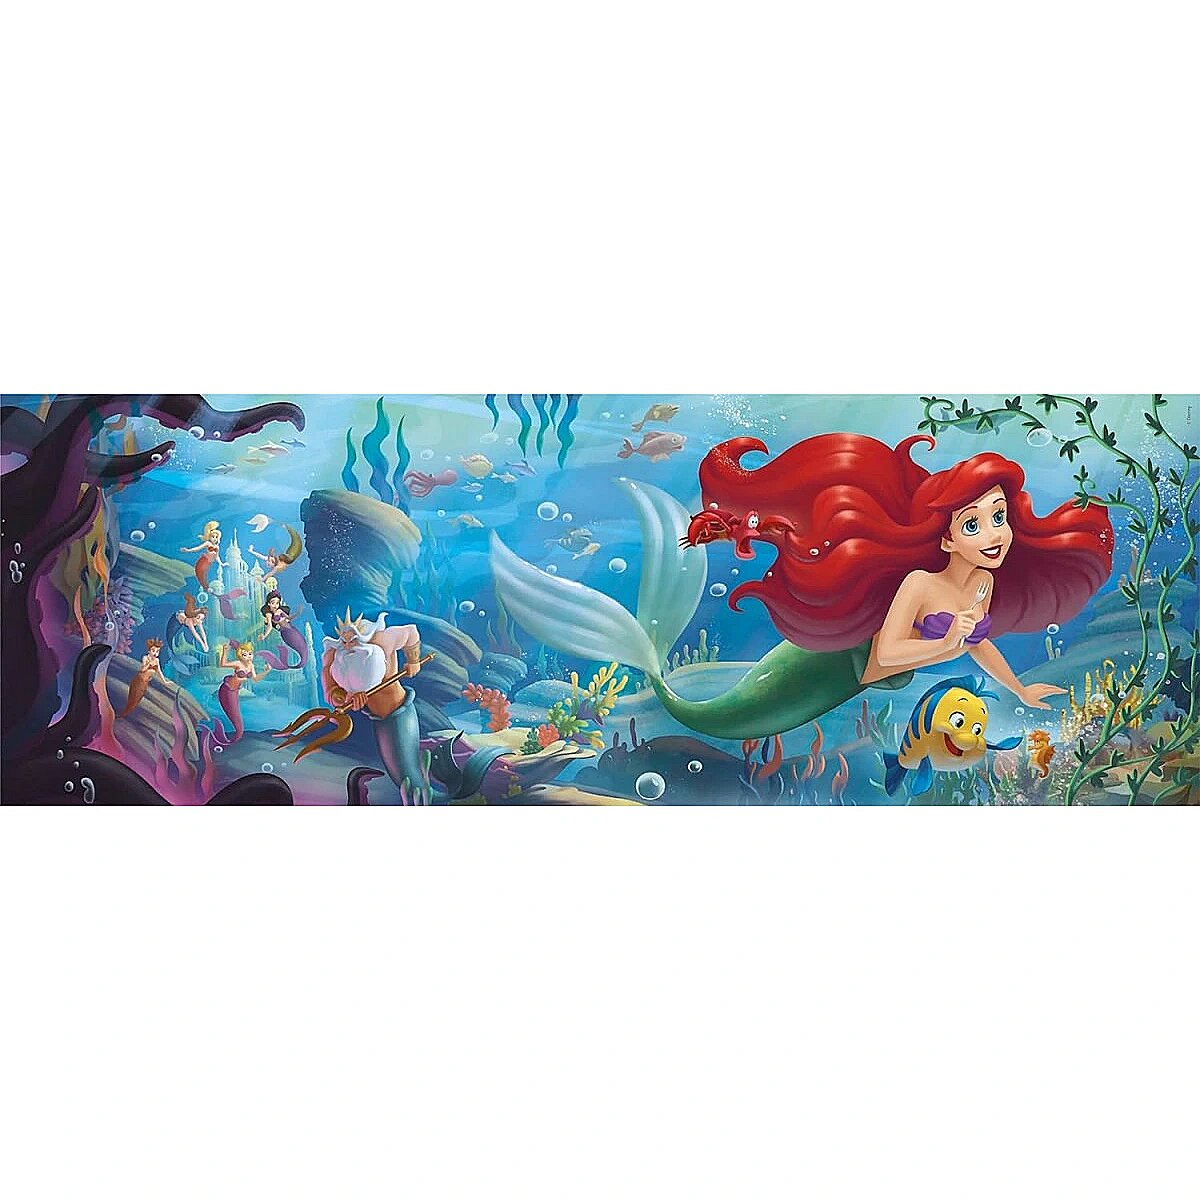 Disney Maps Little Mermaid - 1000 pièces Clementoni FR